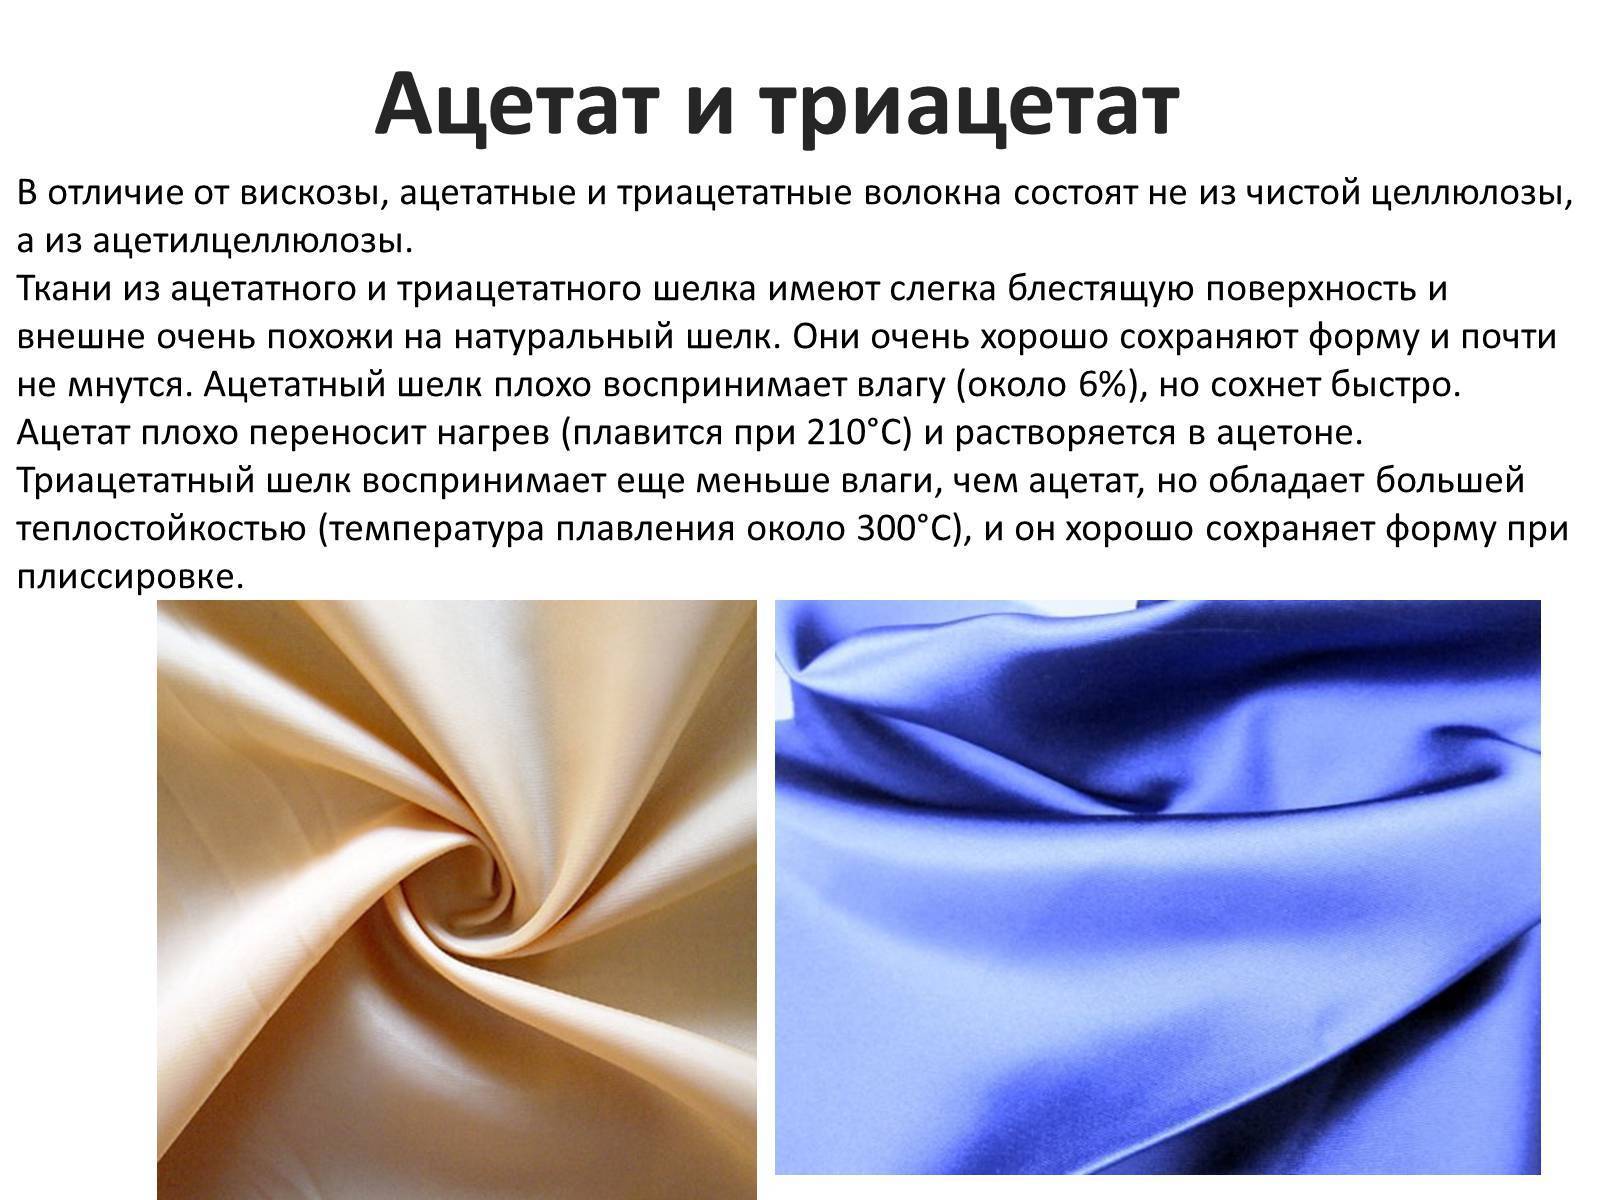 Что такое пике, каковы состав и свойства этой ткани, что из нее изготавливают?